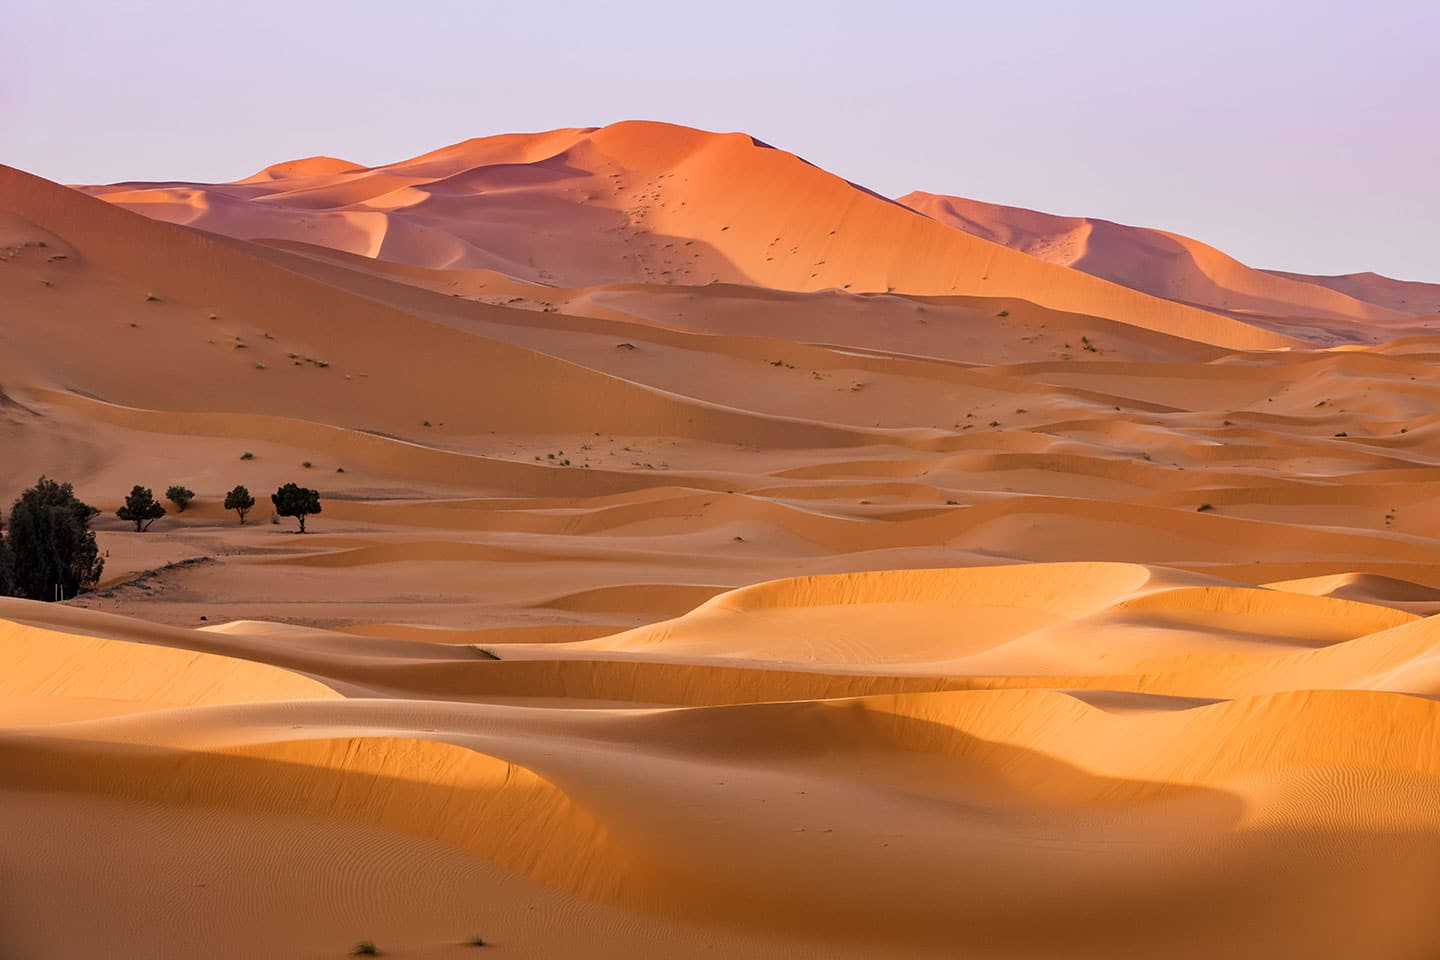 Sunrise over the Sahara desert sand dunes in Morocco